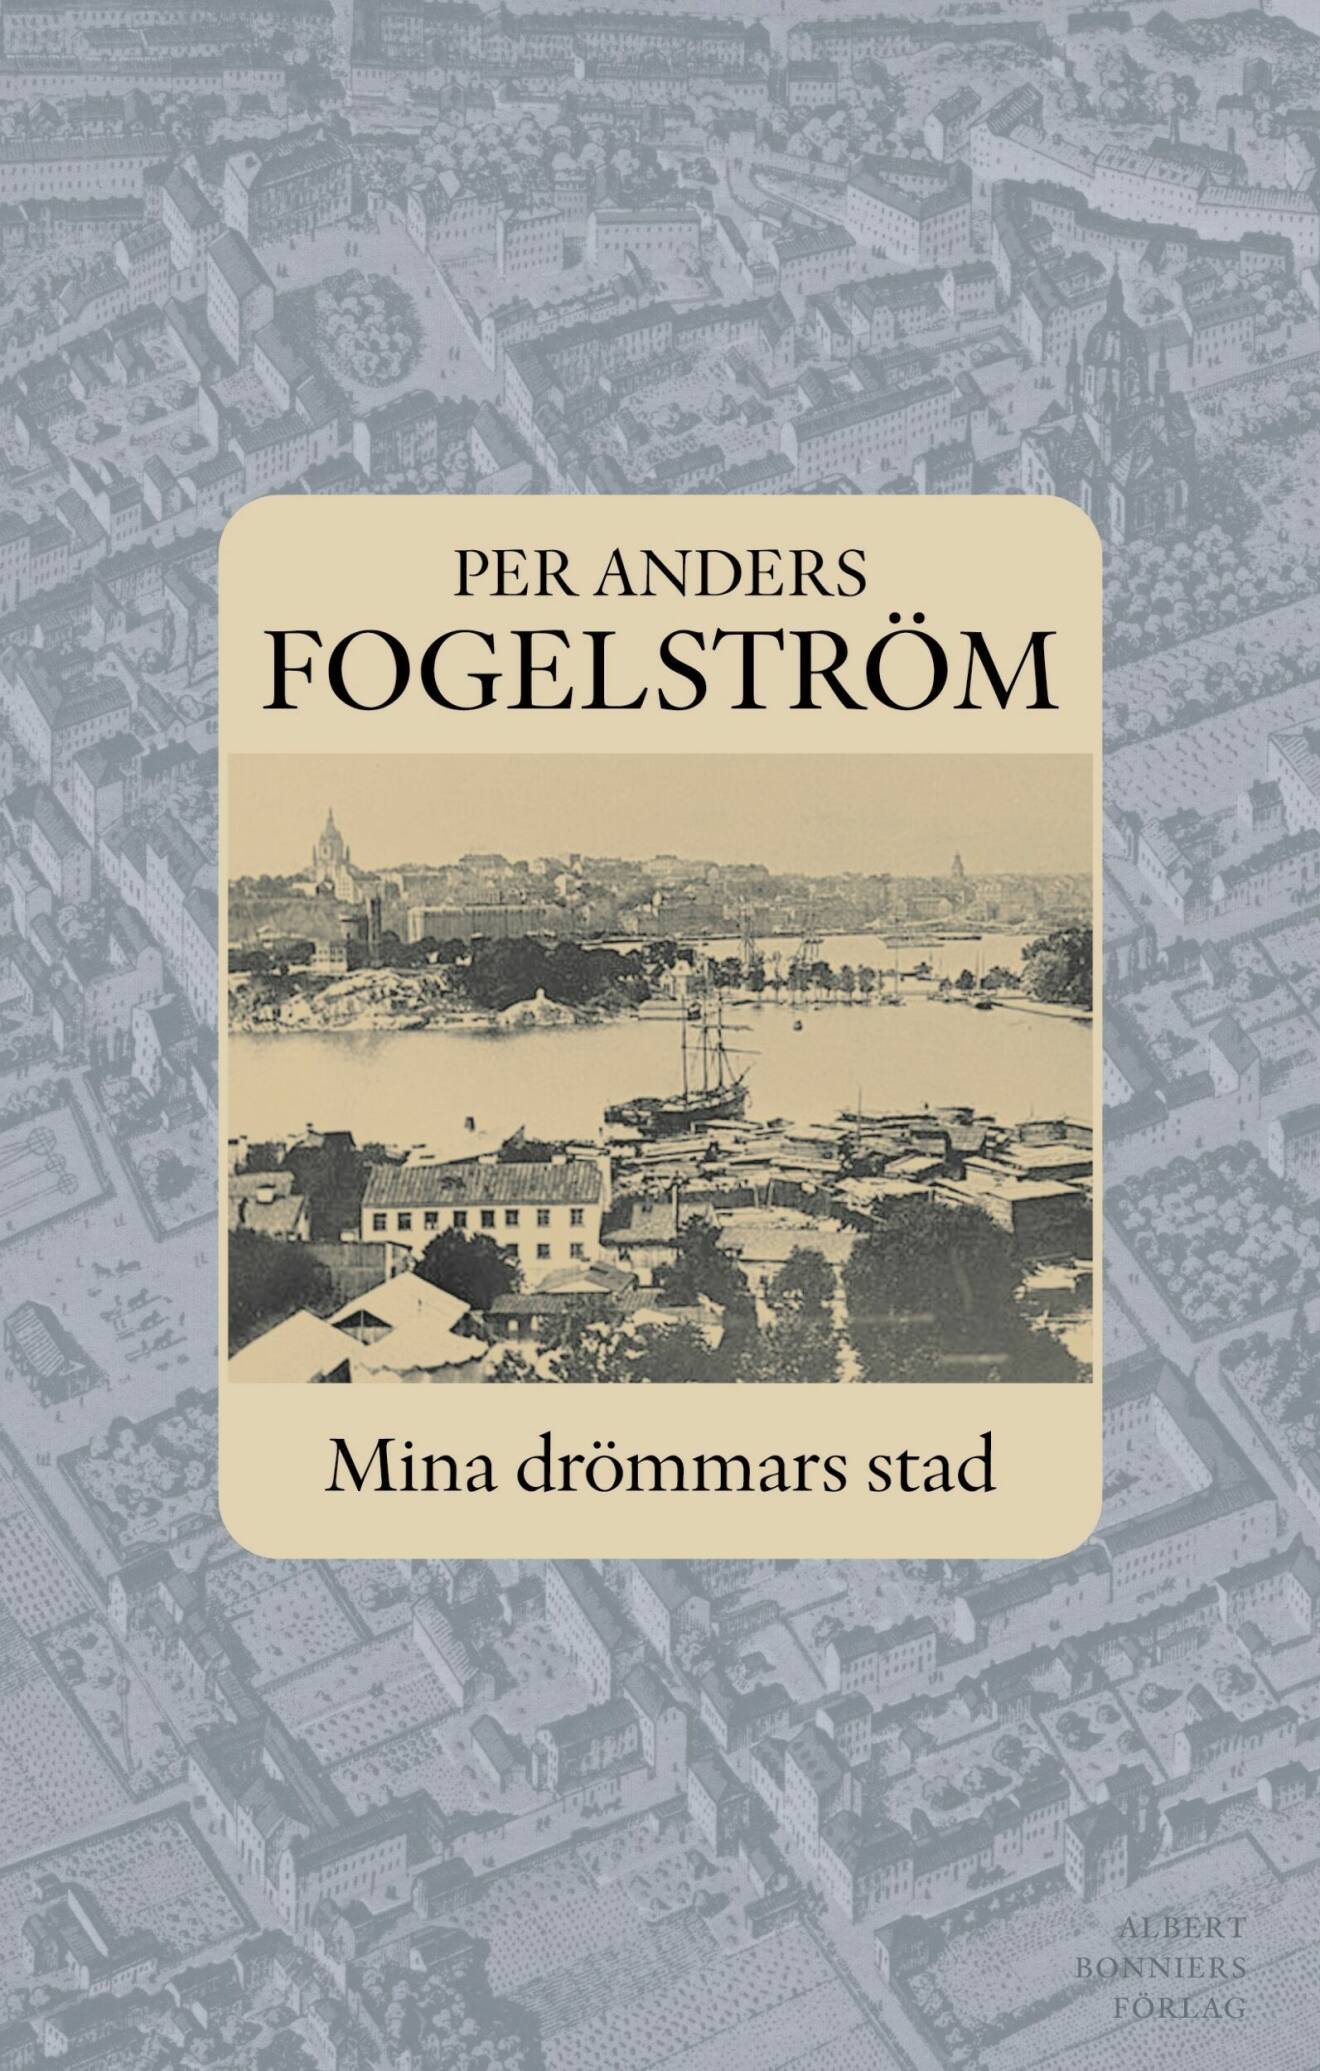 Stad-serien av Per Anders Fogelström.